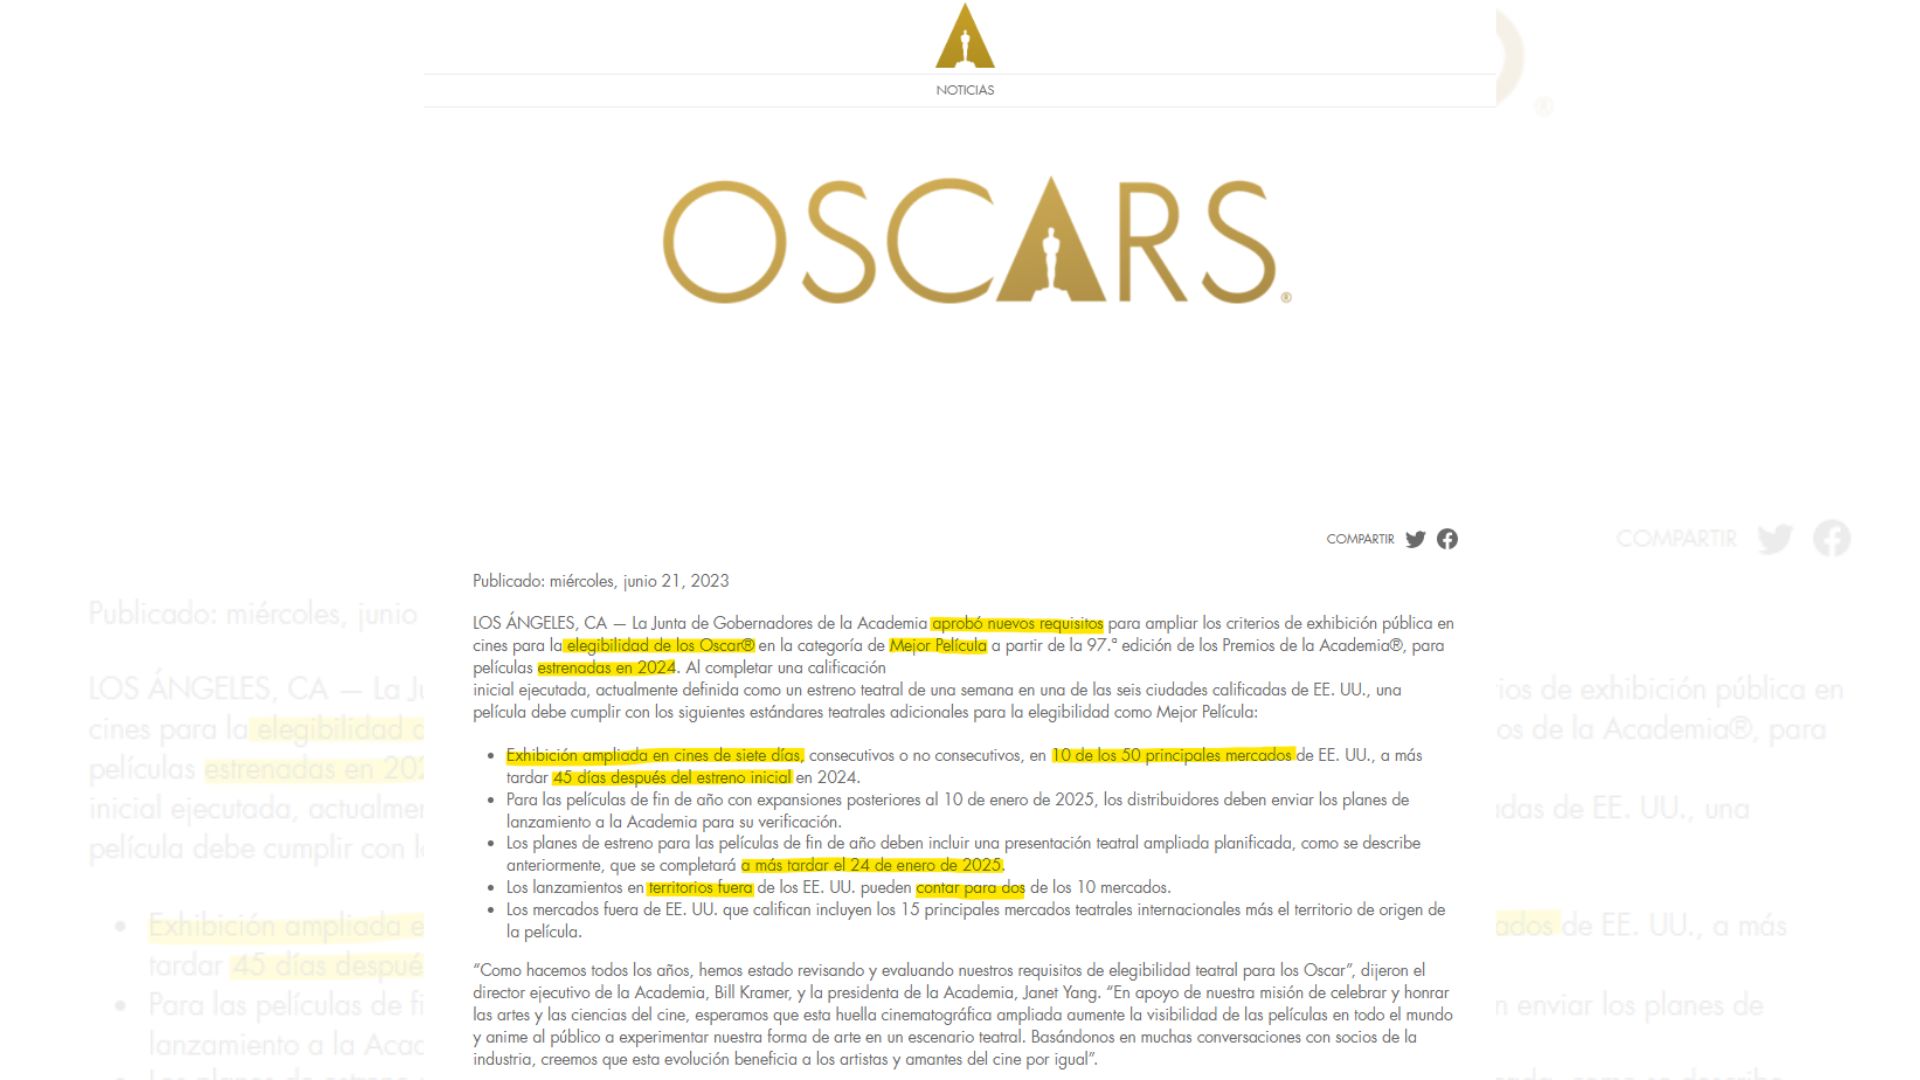 Comunicado de la Academia de Cine de Hollywood sobre los premios Oscar